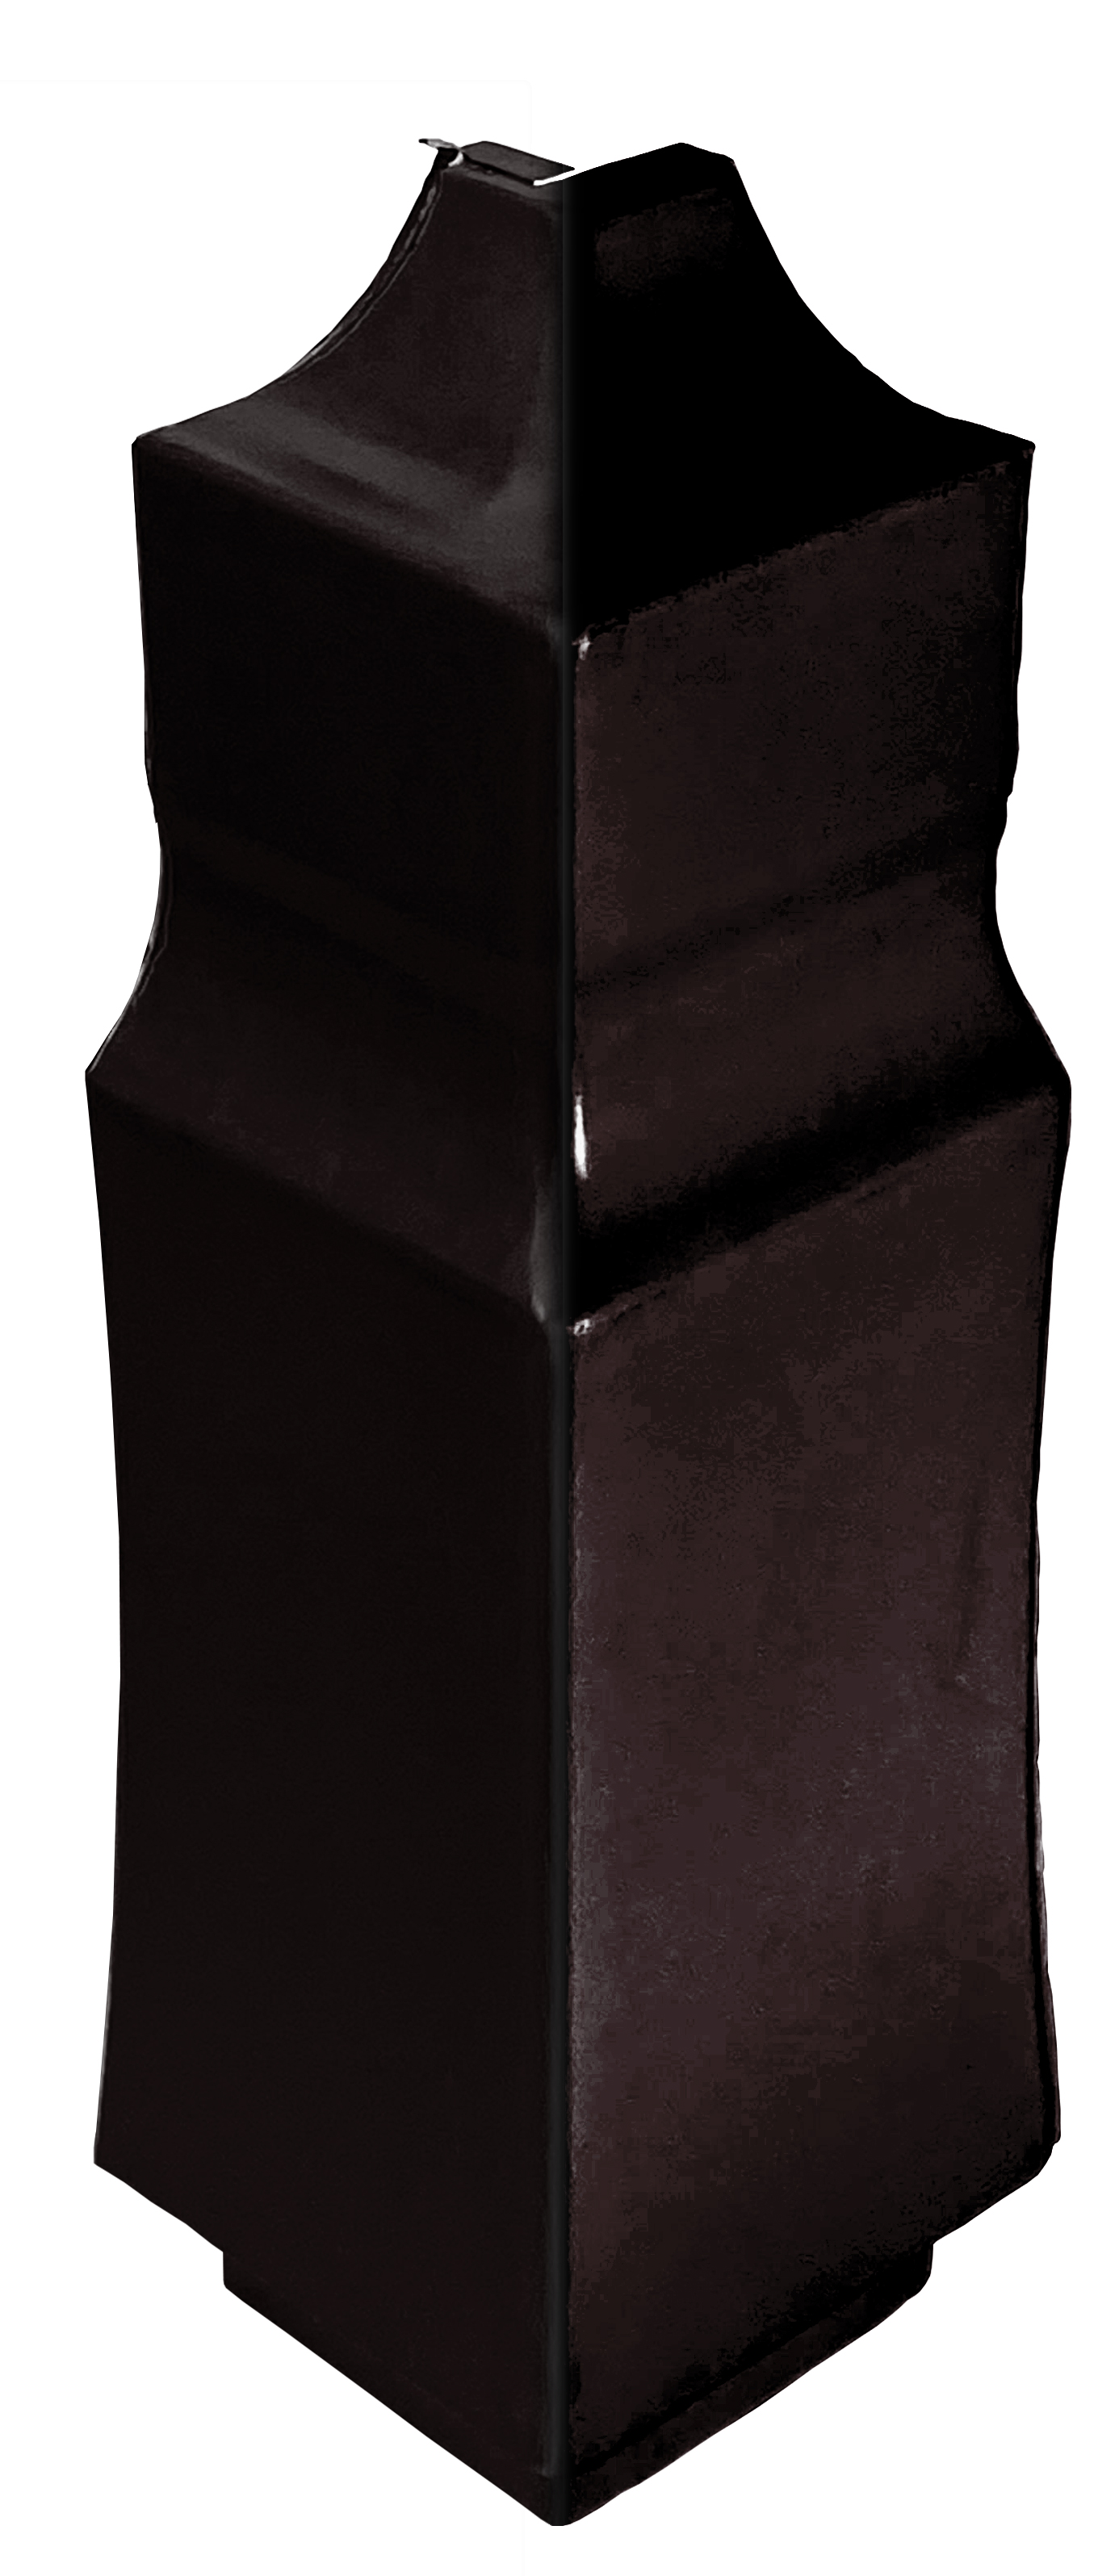 Аксессуар для плинтусного нагревателя Термия уголок наружный ПН (коричневый)